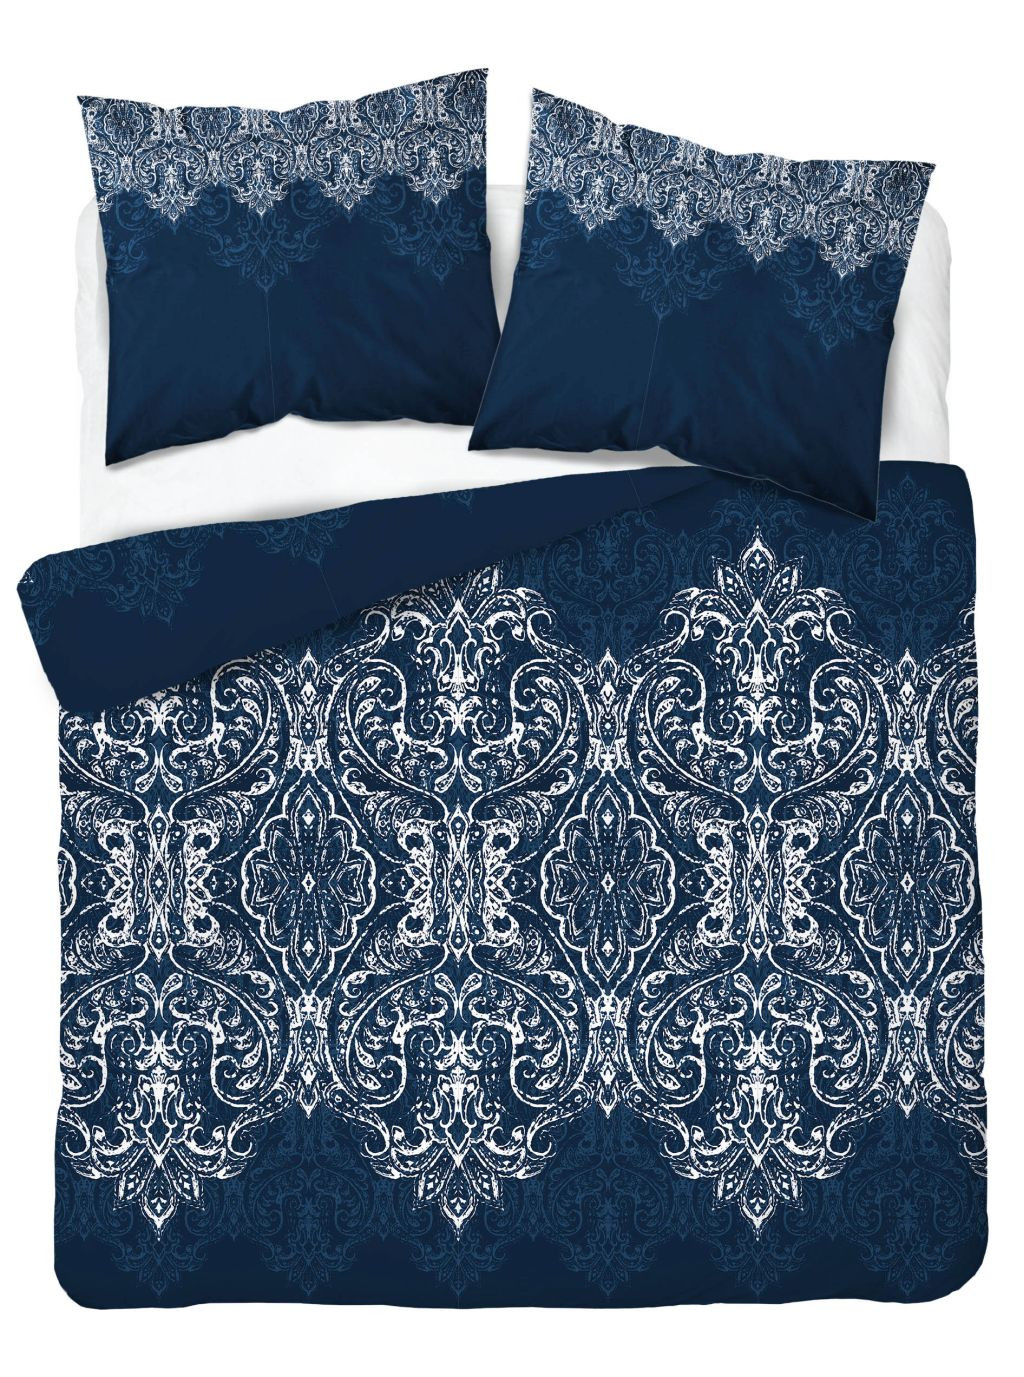 domtextilu.sk Dokonalé postelné bavlnené obliečky v modrej farbe s krásnym orientálnym vzorom v bielej farbe 51842-230686